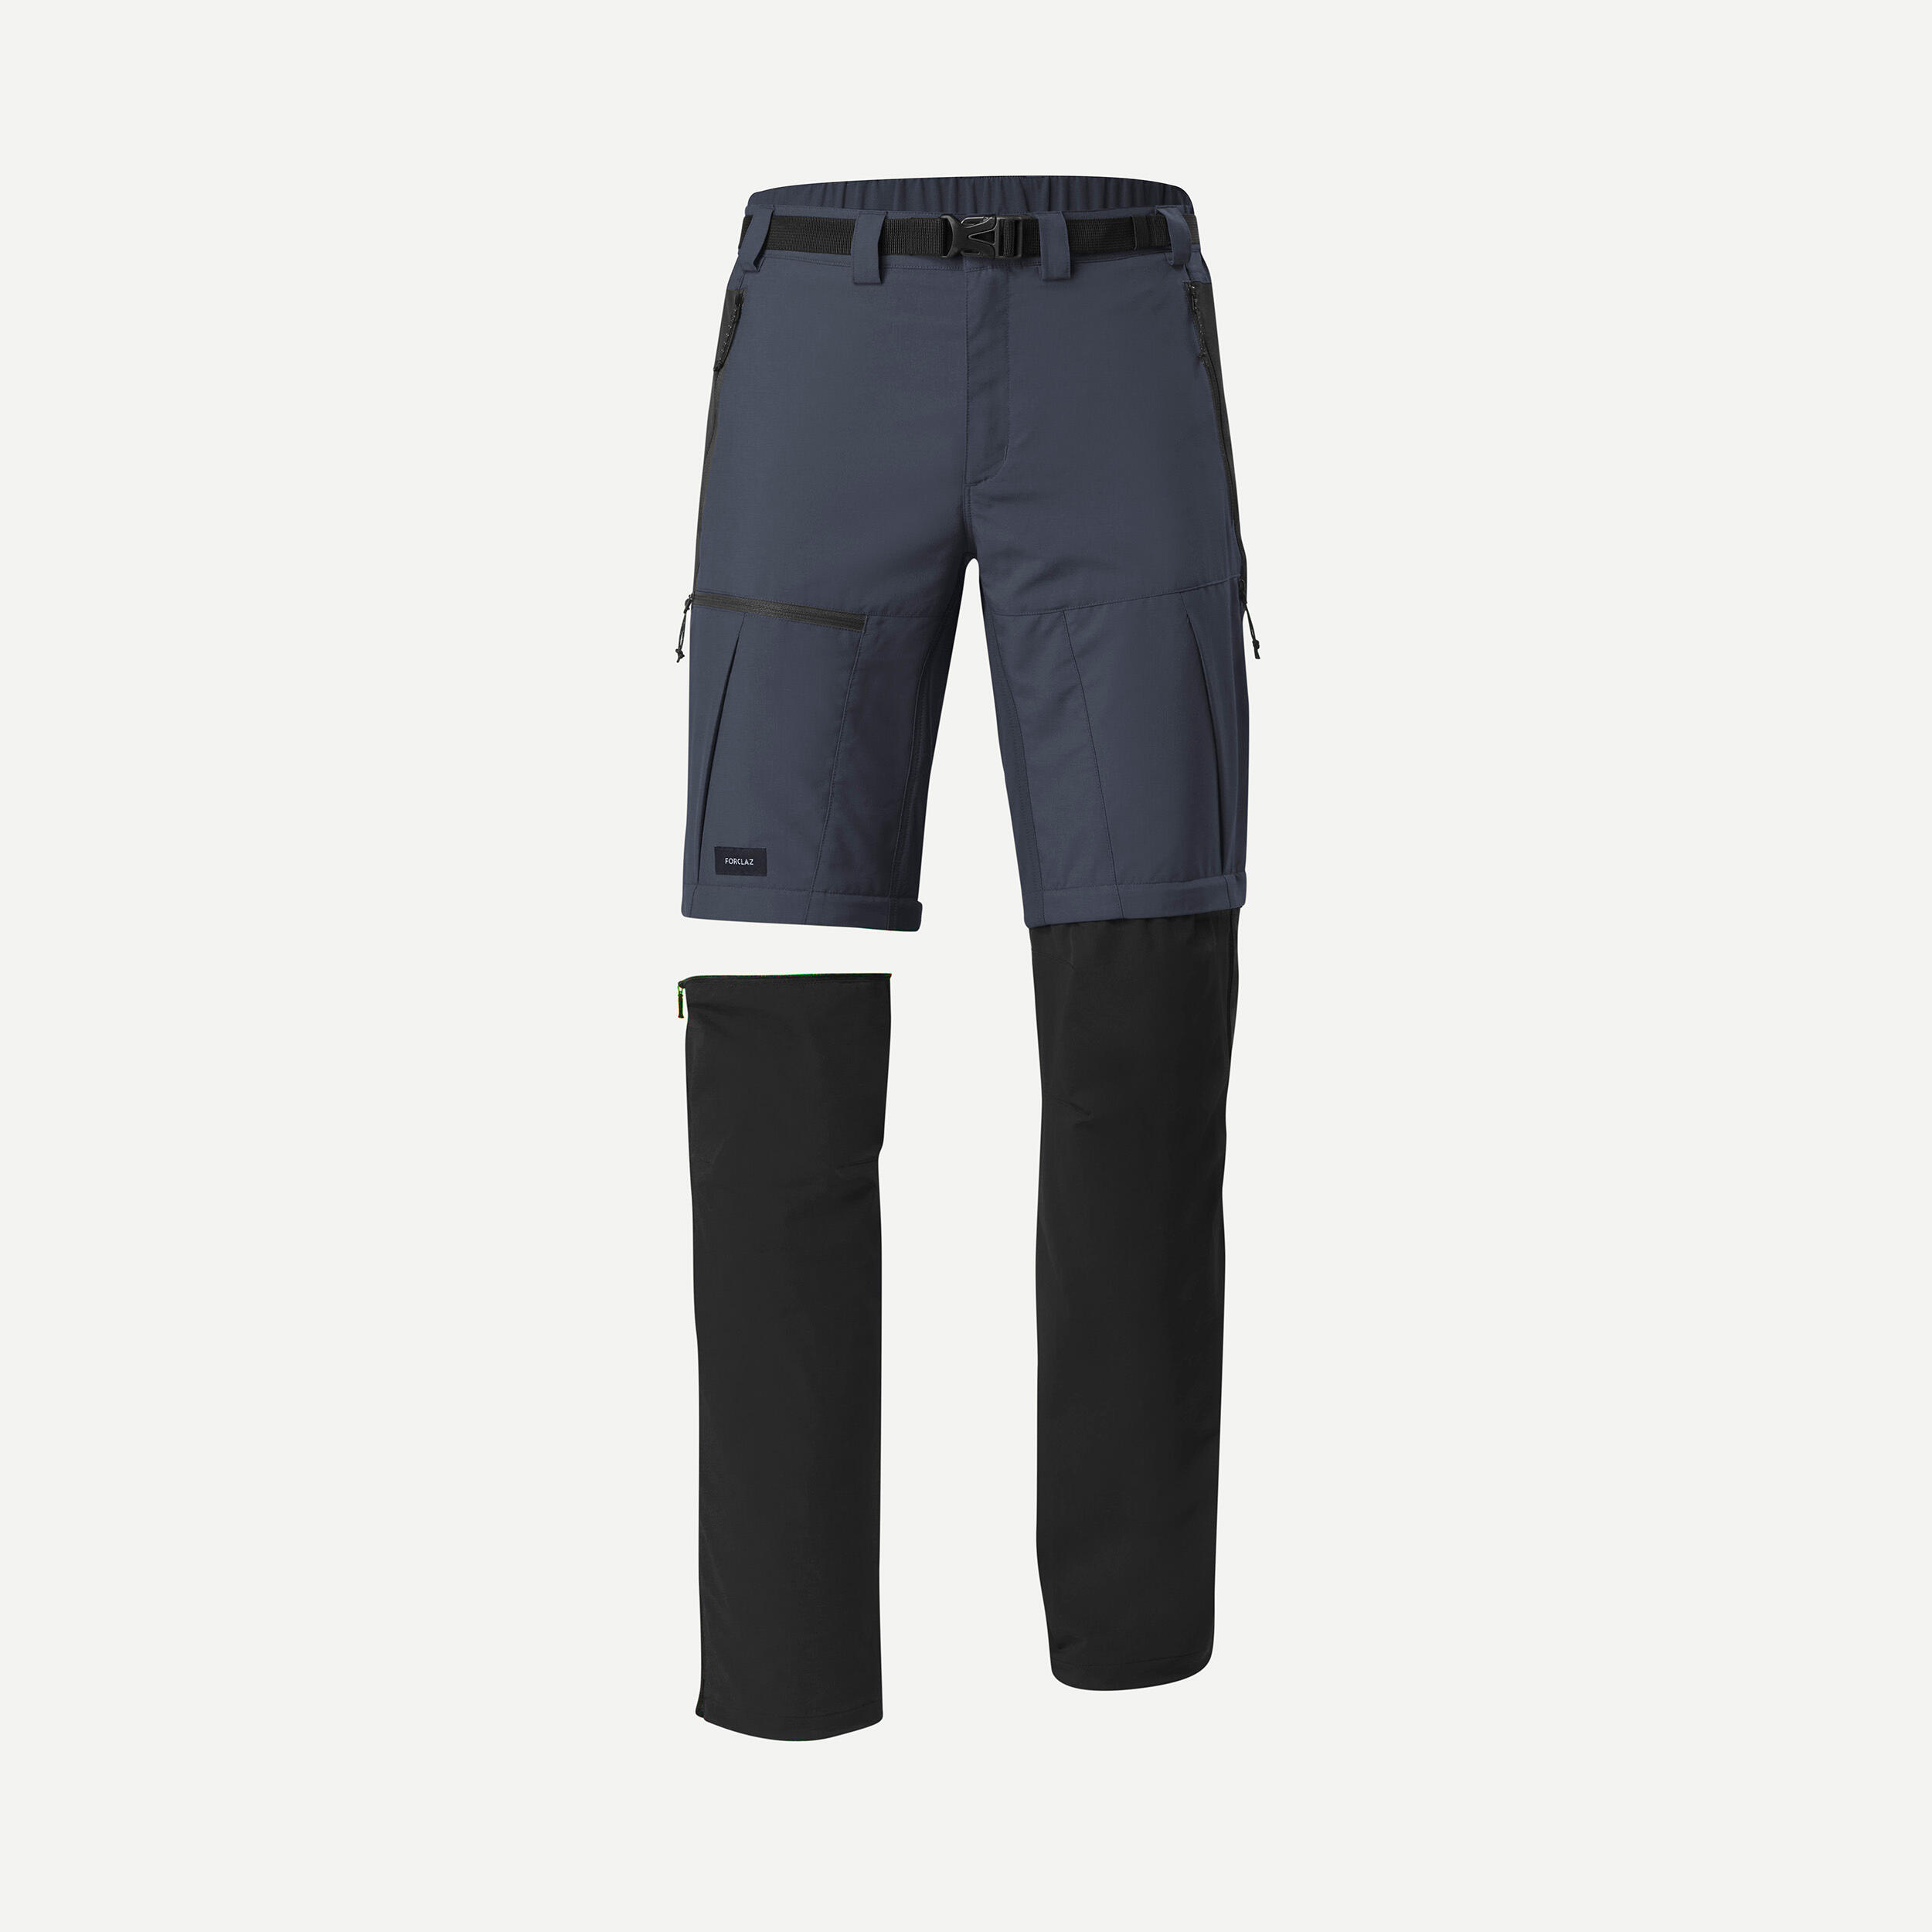 Men's Mountain Hiking Pants - MT 500 Blue - Whale grey, Asphalt blue,  Carbon grey - Forclaz - Decathlon